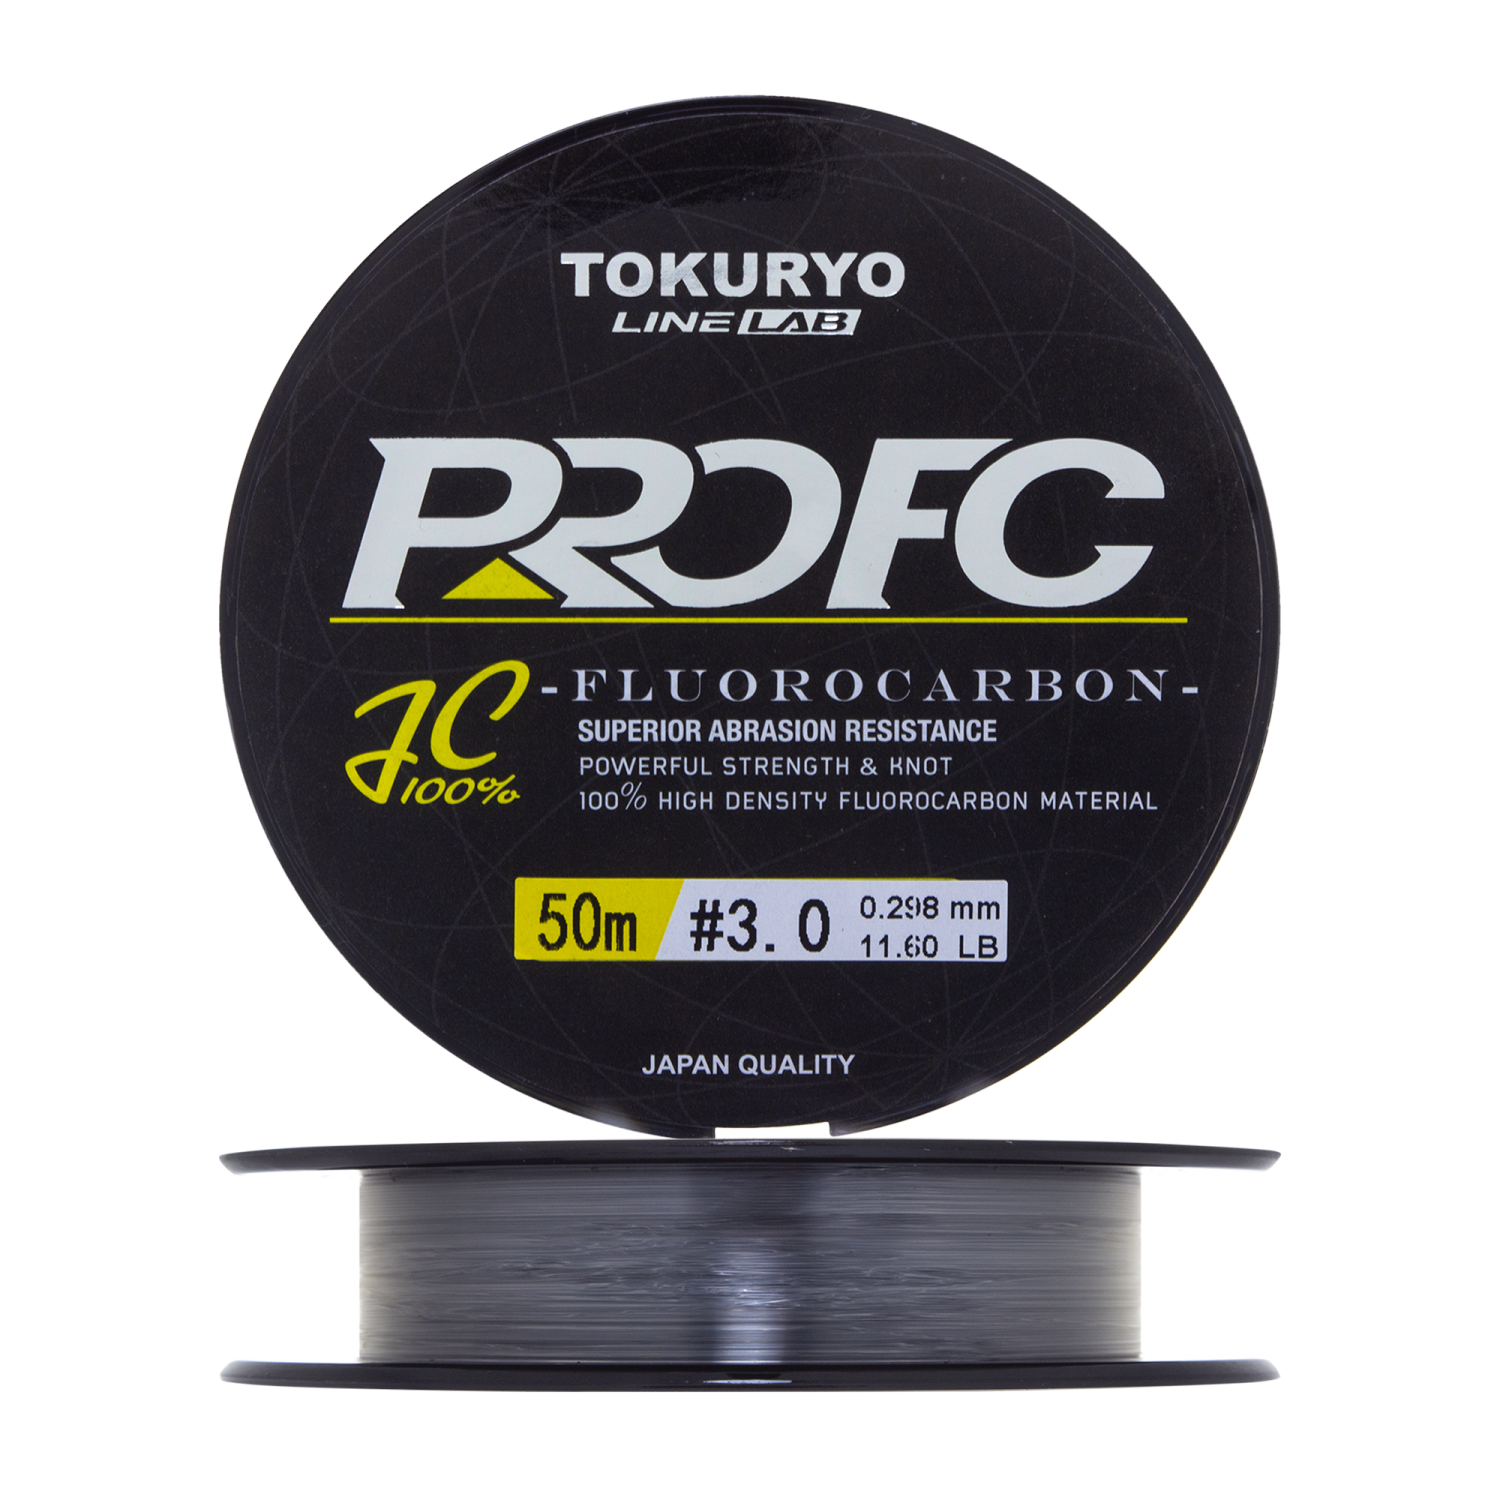 Флюорокарбон Tokuryo Fluorocarbon Pro FC #3 50м (clear)